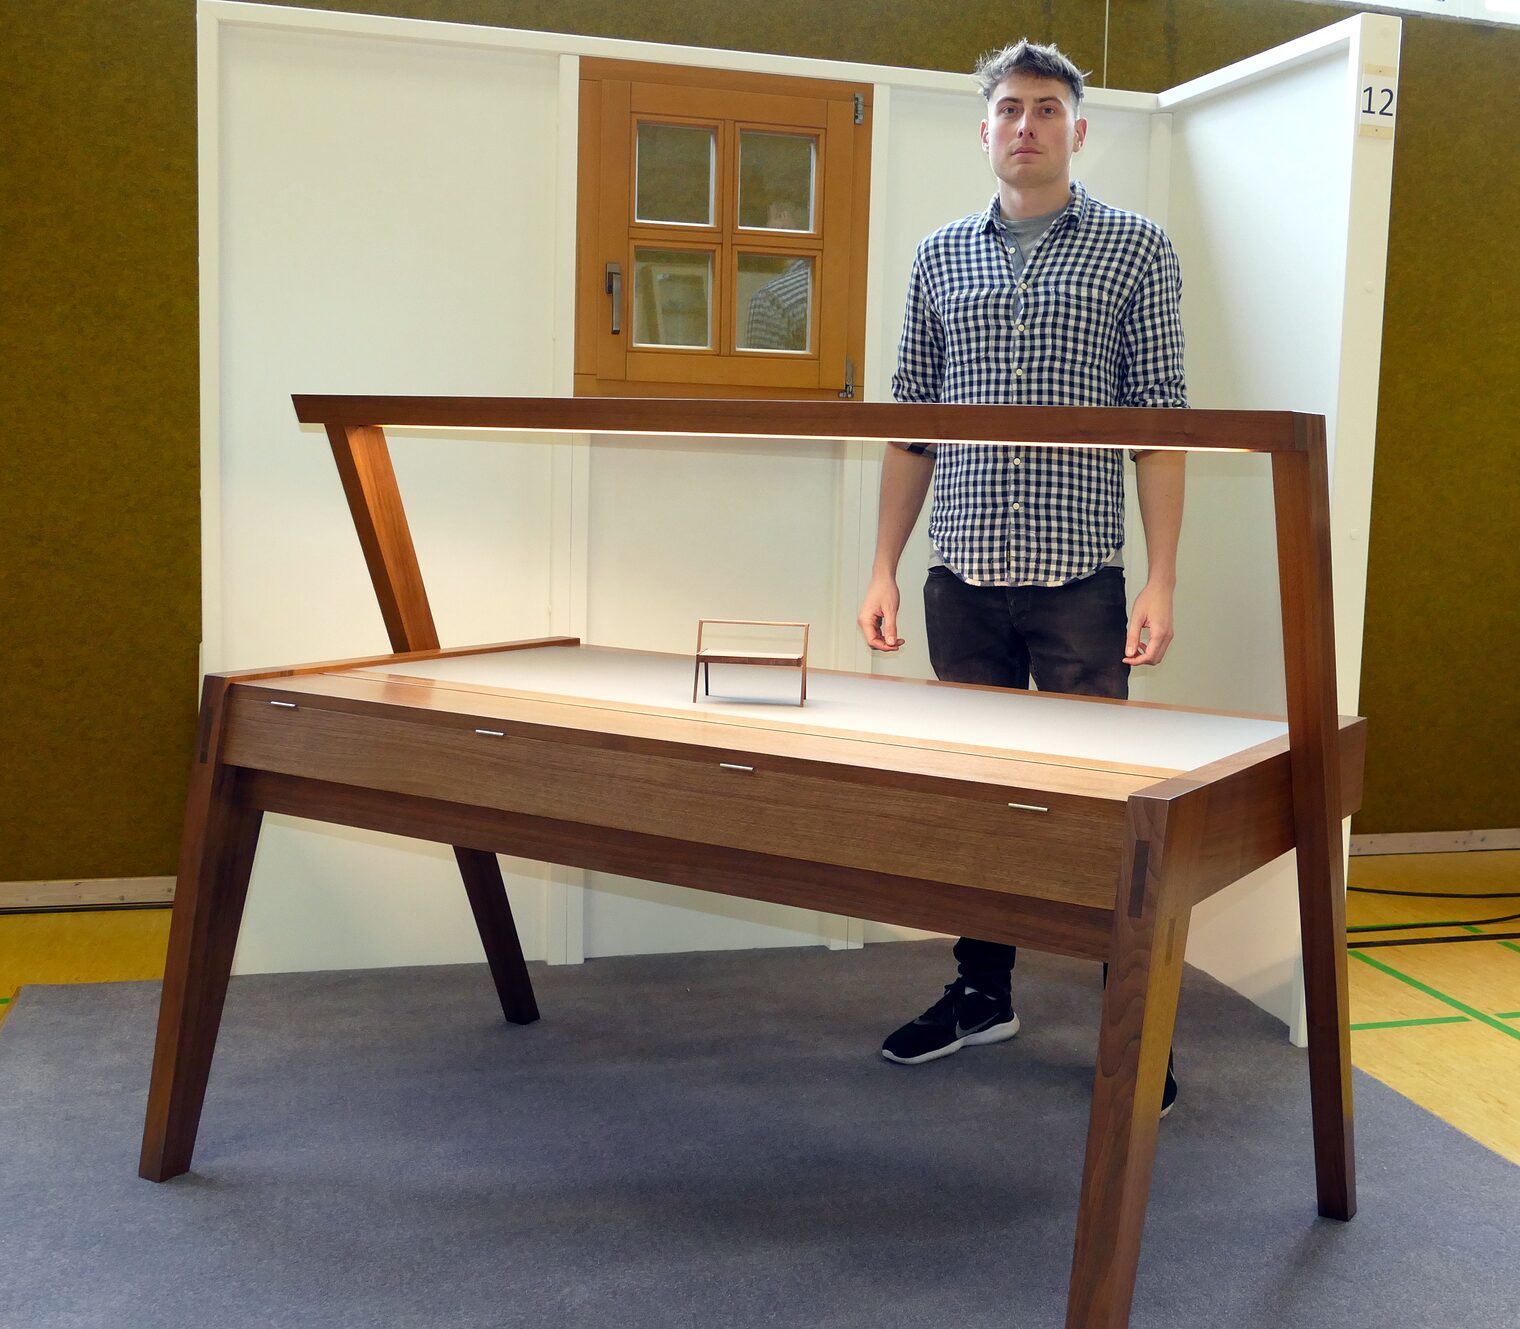 Schreibtisch "Ami-Nuss" hat Alexander Spangler seinen Schreibtisch mit LED-Beleuchtung genannt.